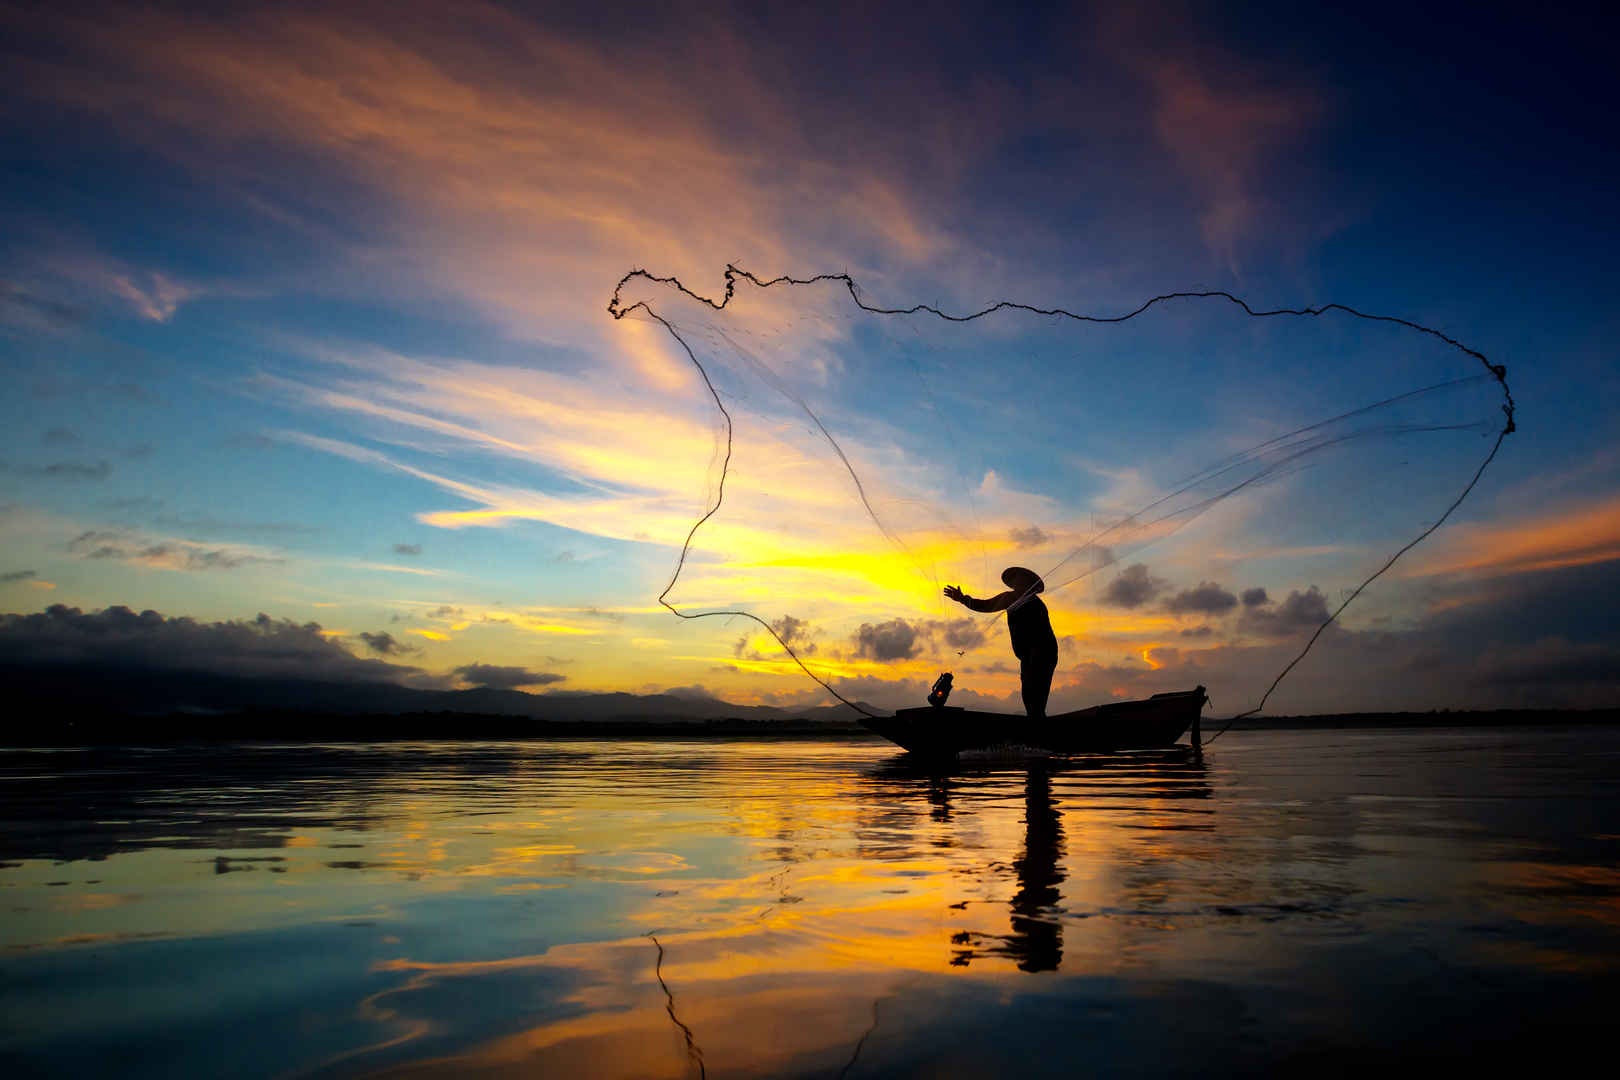 渔民清晨在湖边用网抓鱼的剪影